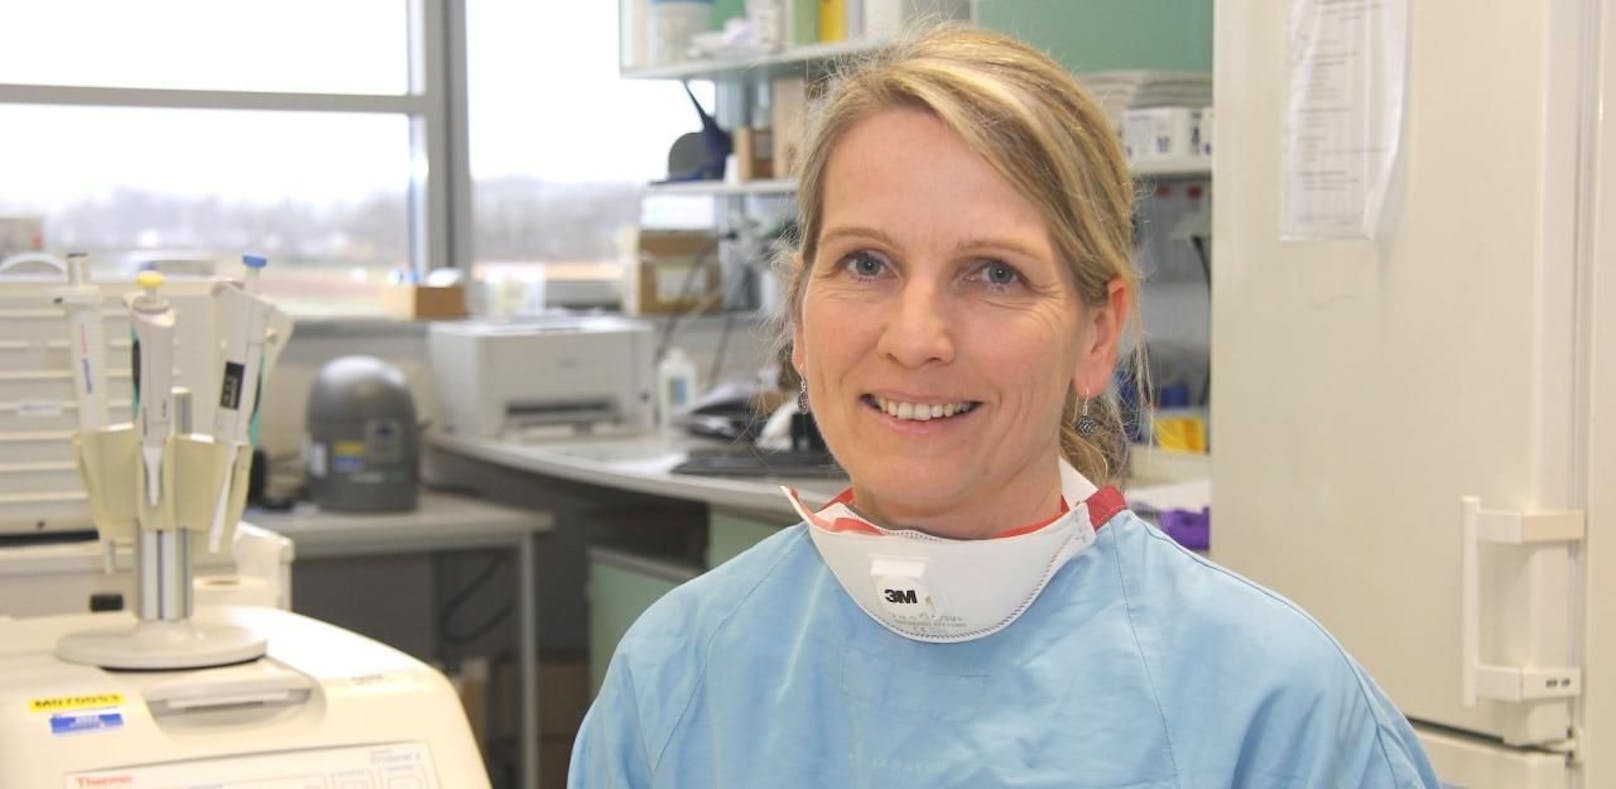 Regina Stitz ist eine von rund 3.000 Mitarbeitern am Salzkammergut Klinikum. Sie wertet die CoVid-19-Abstriche aus.